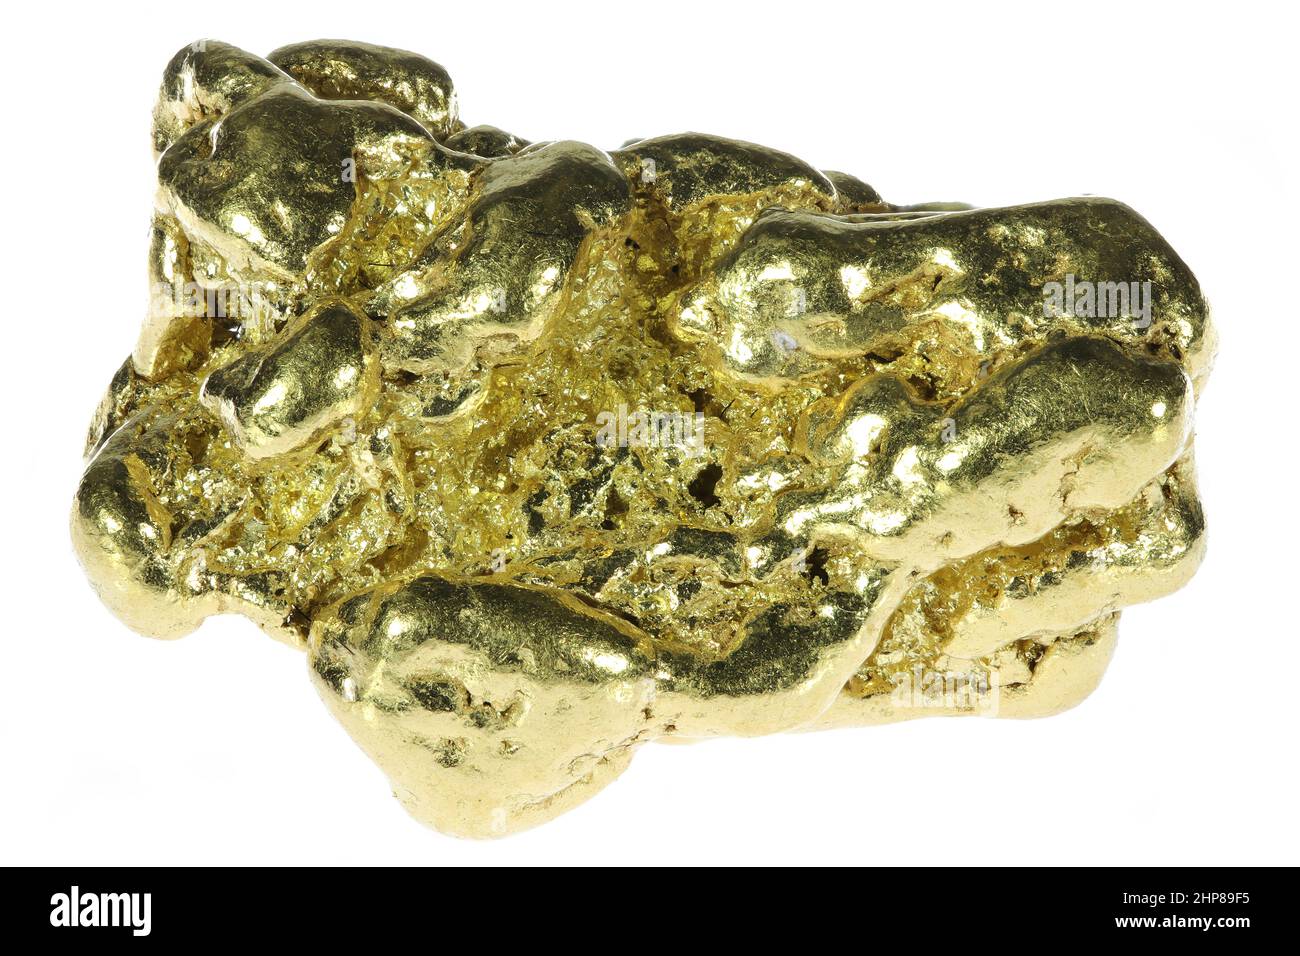 Nuggets d'or indigènes de 7,2 grammes provenant d'Atlin, en Colombie-Britannique, au Canada, isolés sur fond blanc Banque D'Images